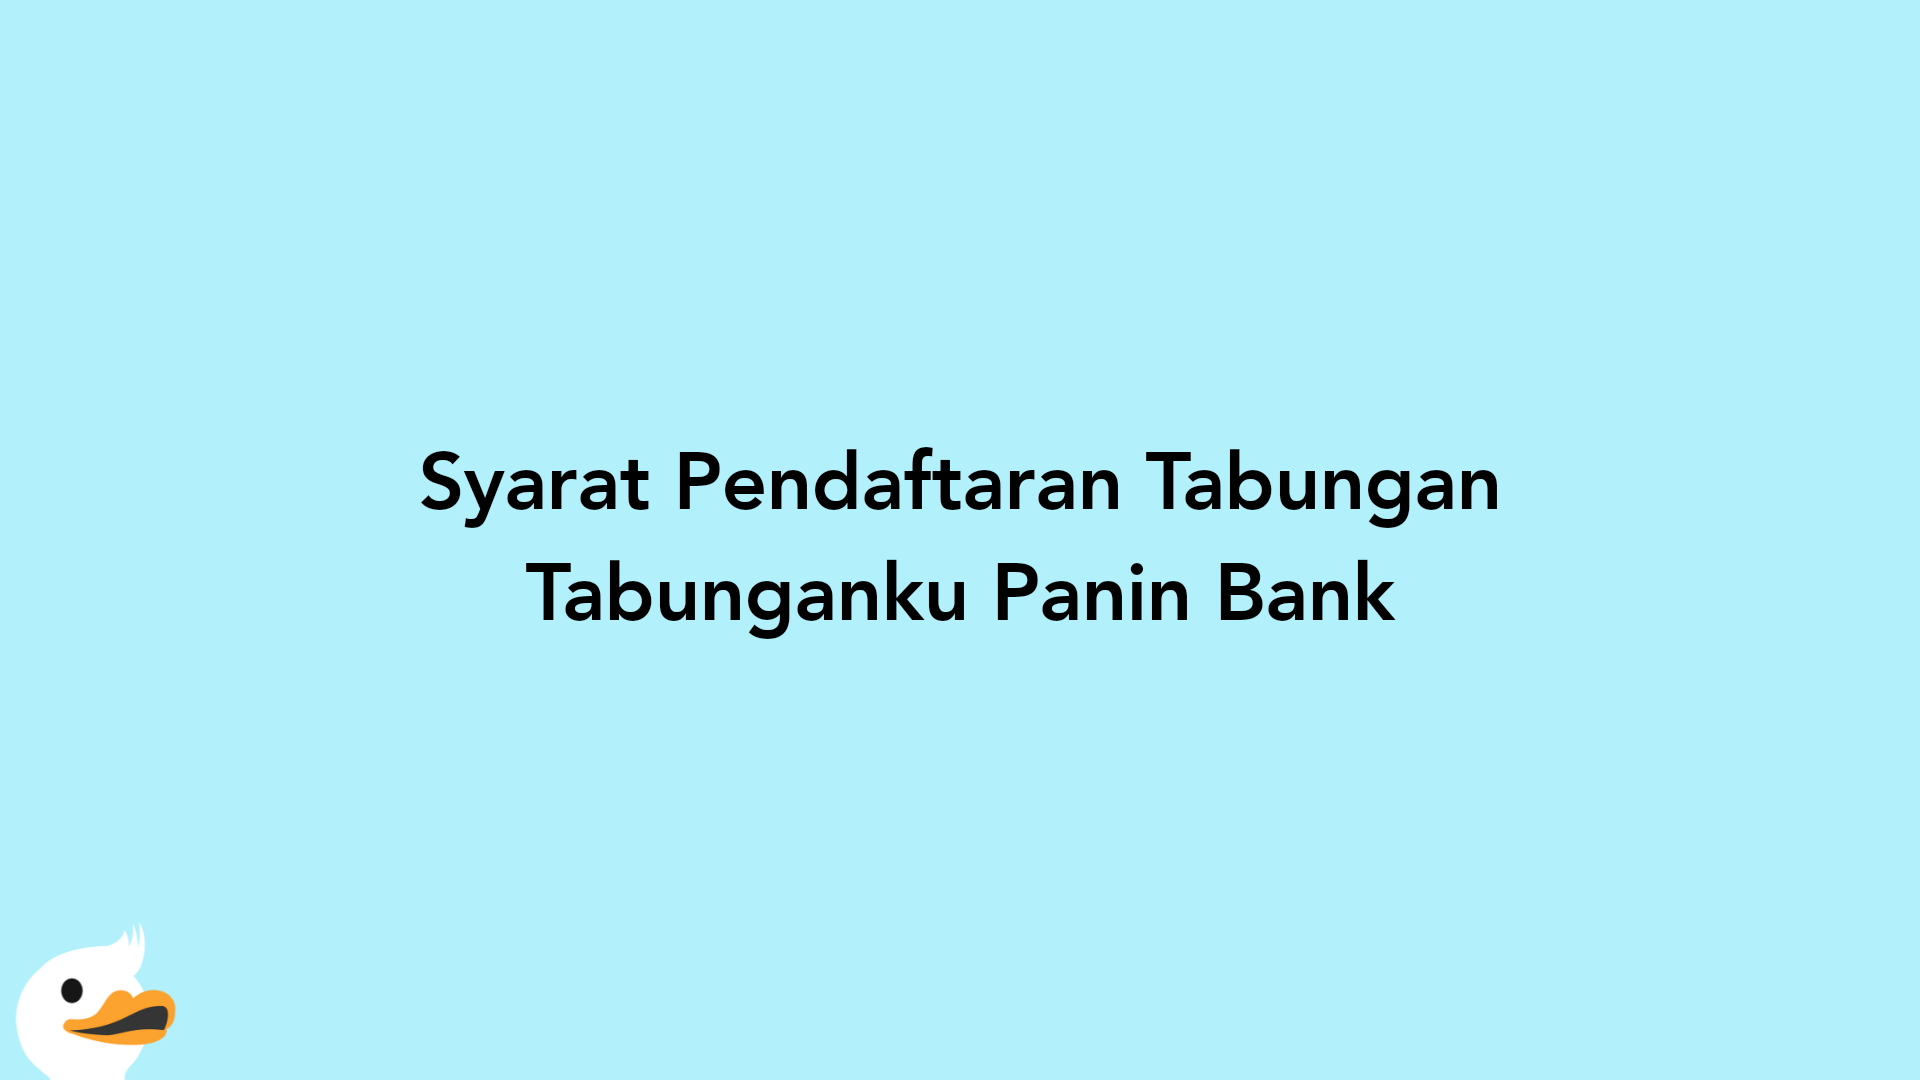 Syarat Pendaftaran Tabungan Tabunganku Panin Bank